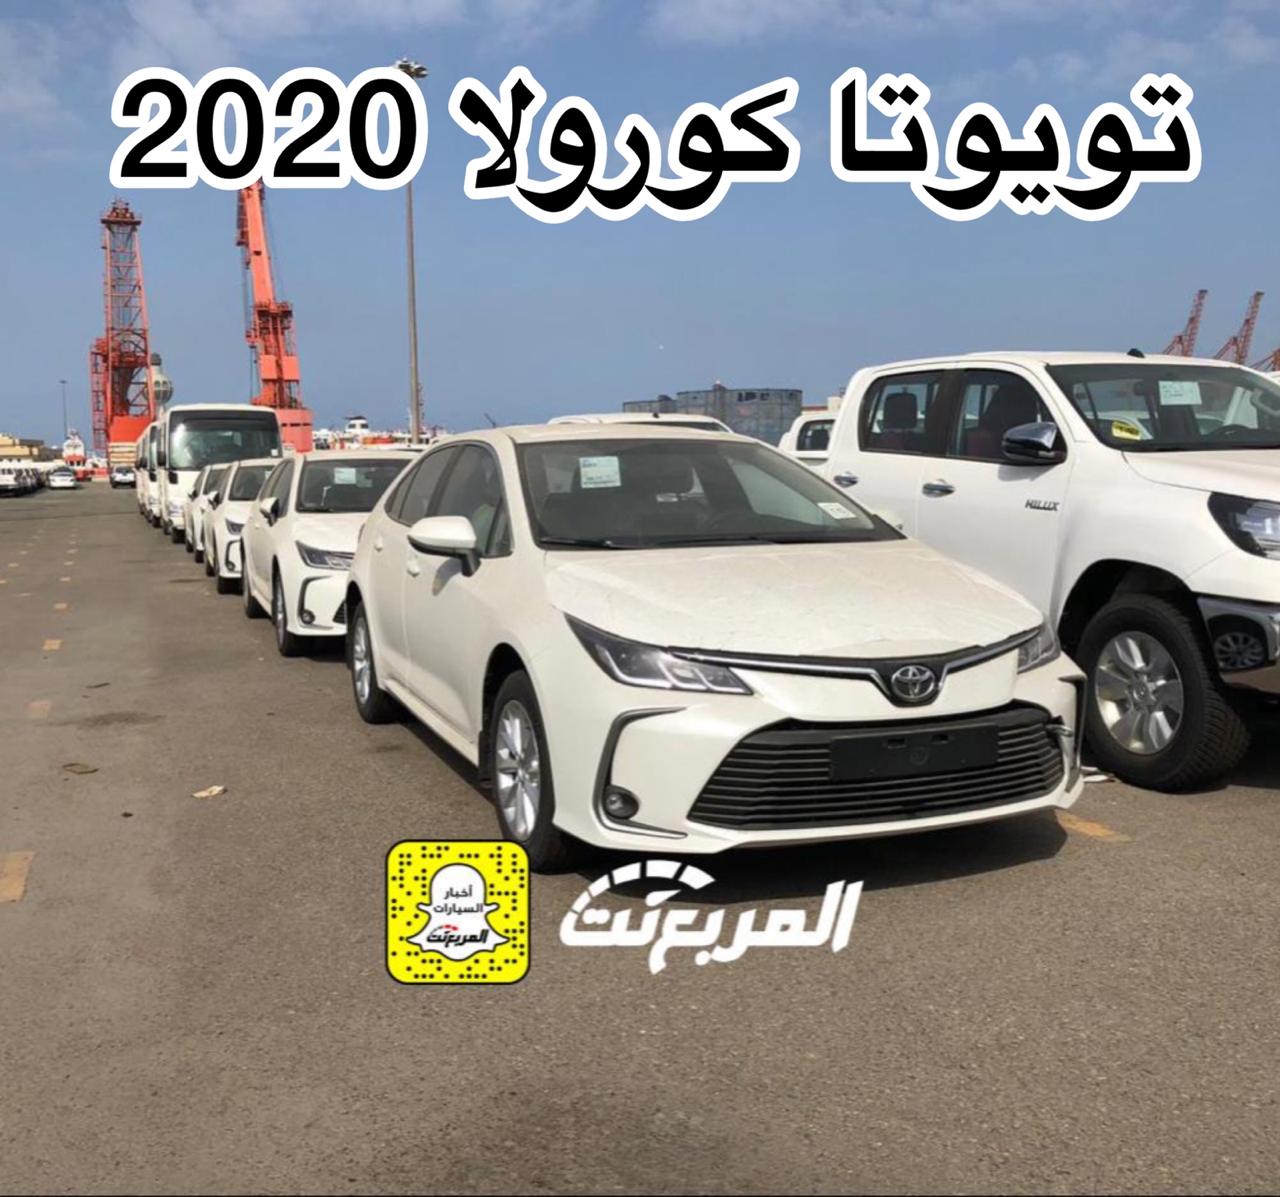 “بالصور” وصول تويوتا كورولا 2020 الجديدة الى السعودية + معلومات Toyota Corolla 1